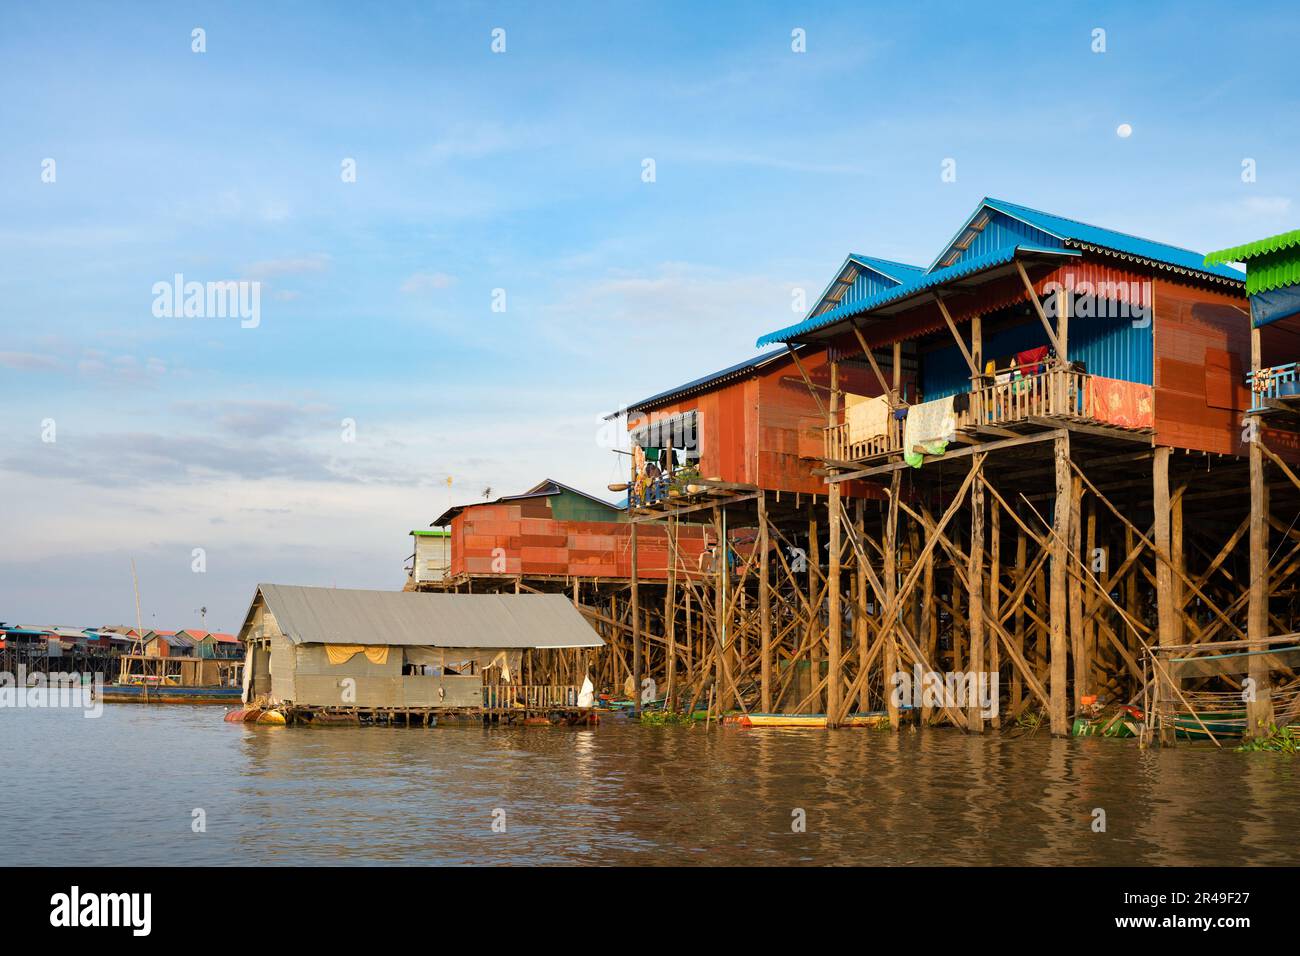 Un bâtiment majestueux au-dessus des eaux tranquilles du village flottant de Kompong Khleang, Cambodge Banque D'Images